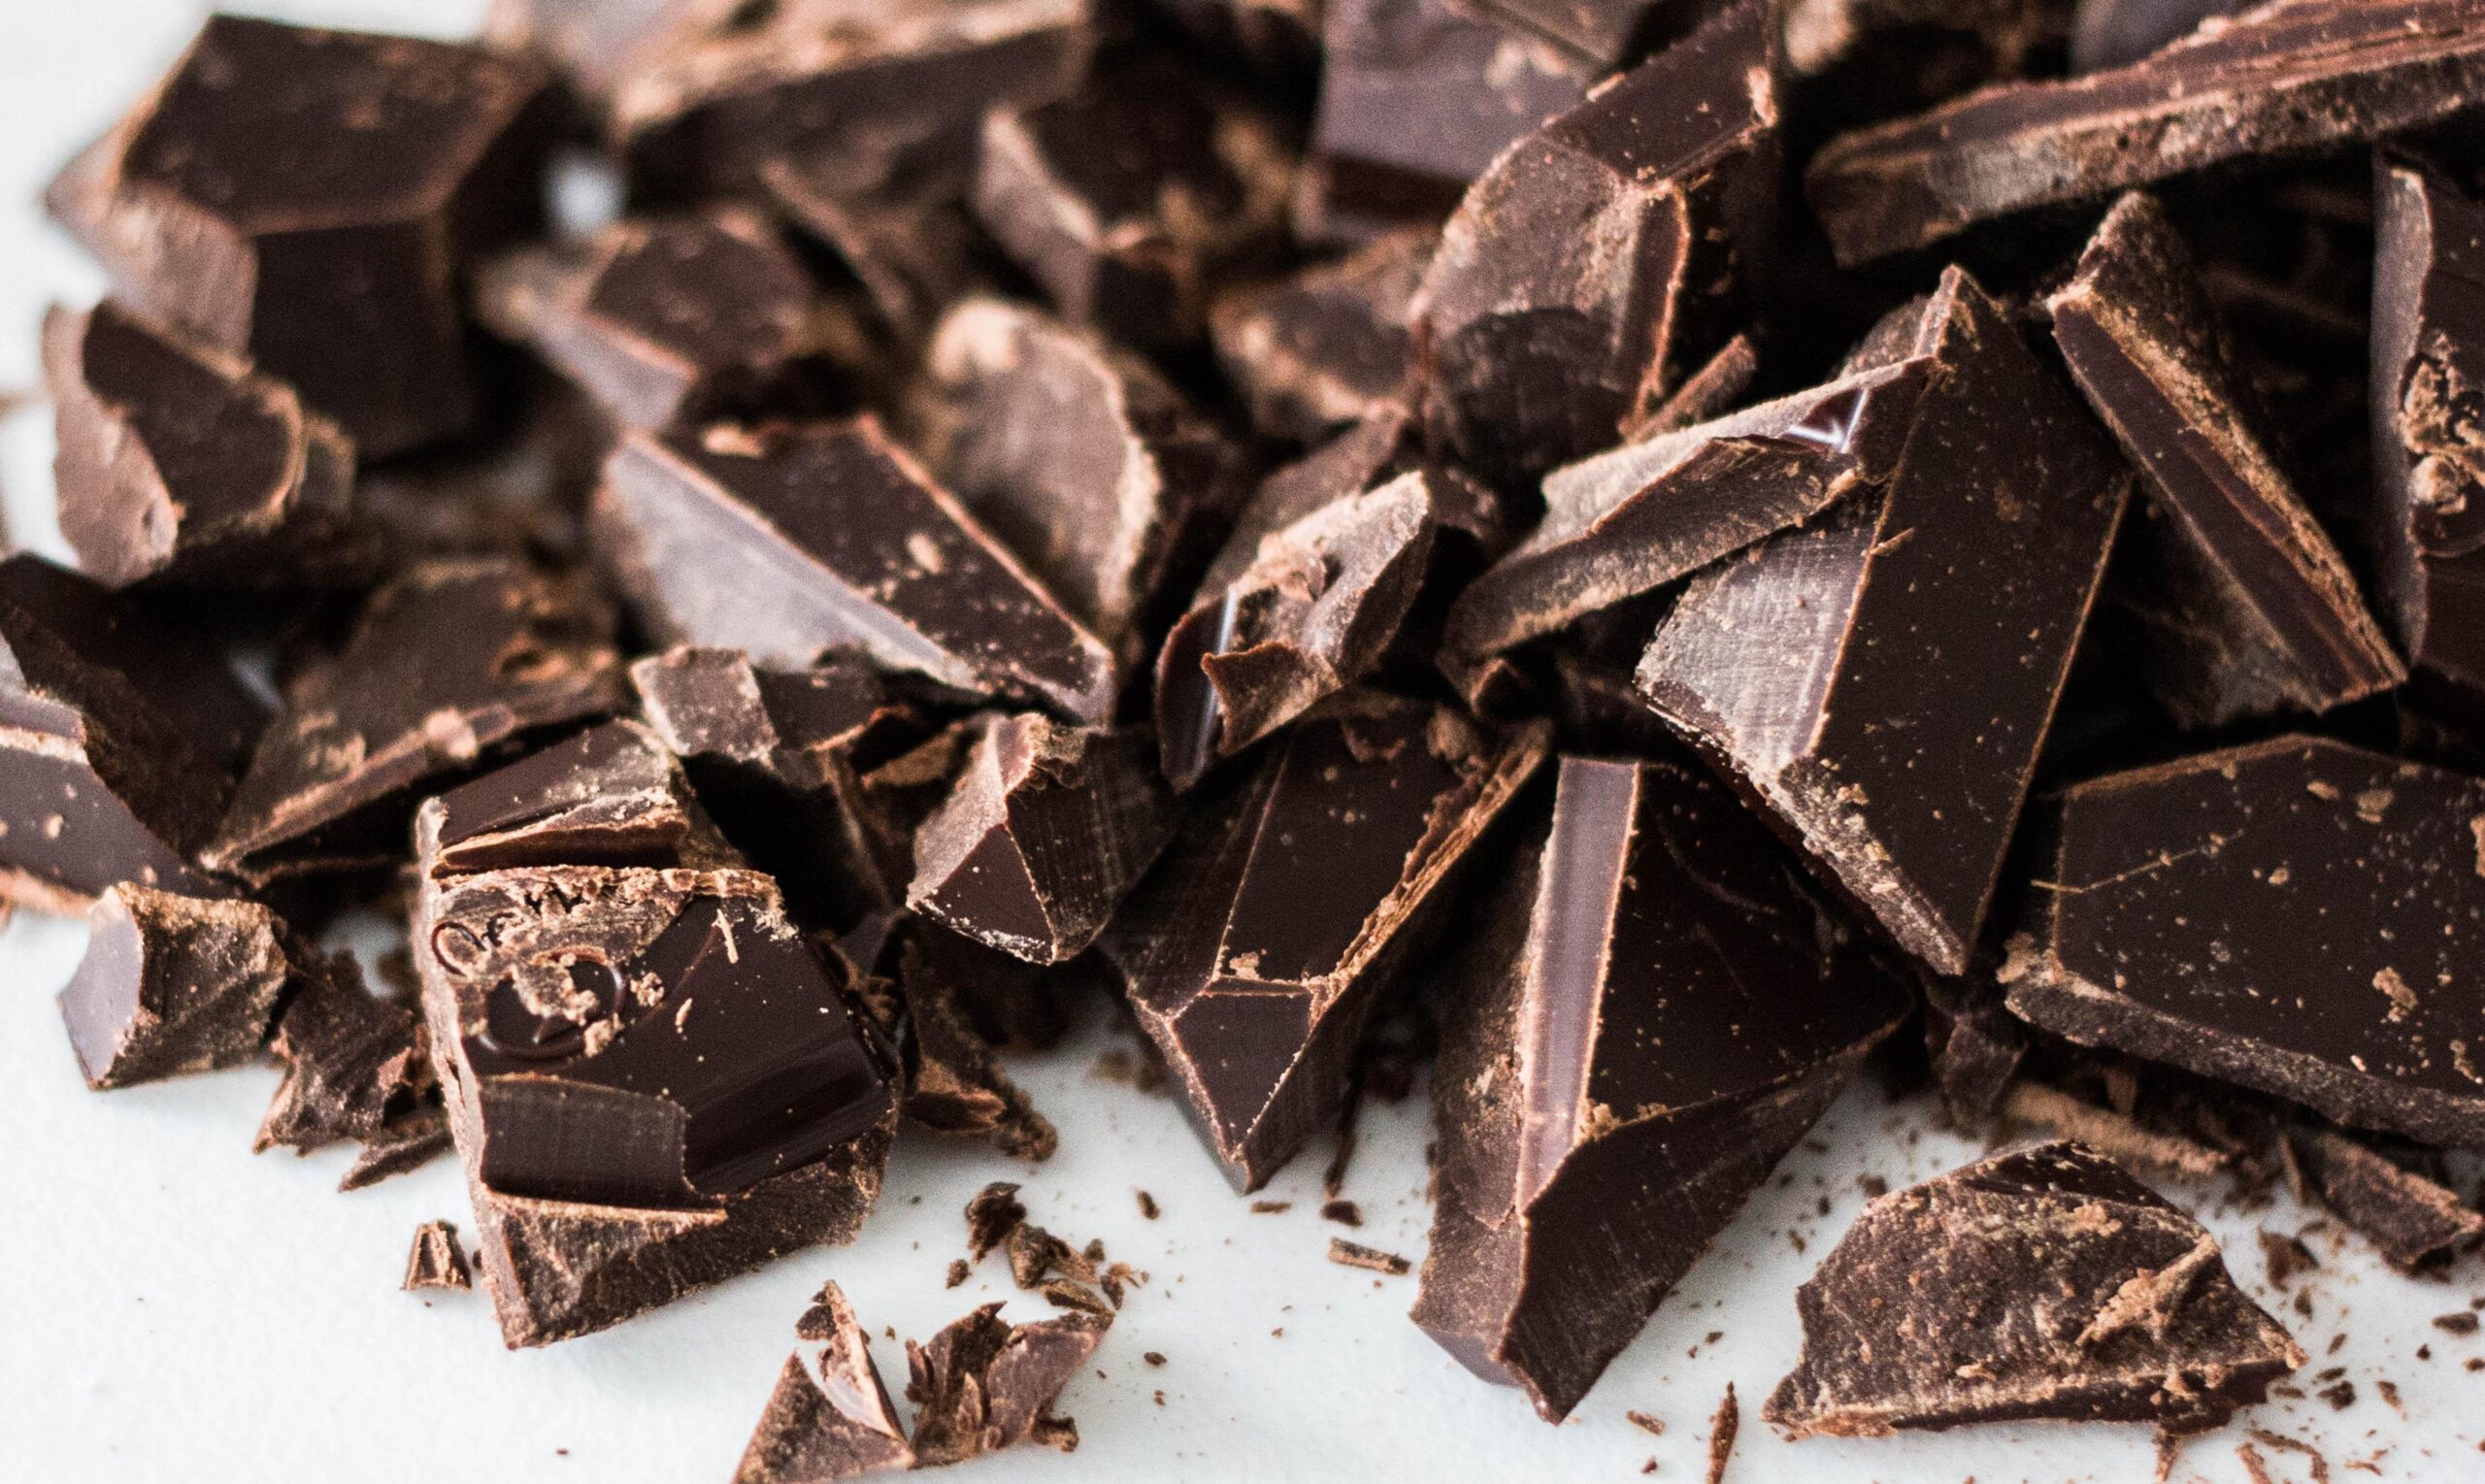 Chocolate: 50 Recetas Para Disfrutar de Sus Beneficios y Sus Cualidades